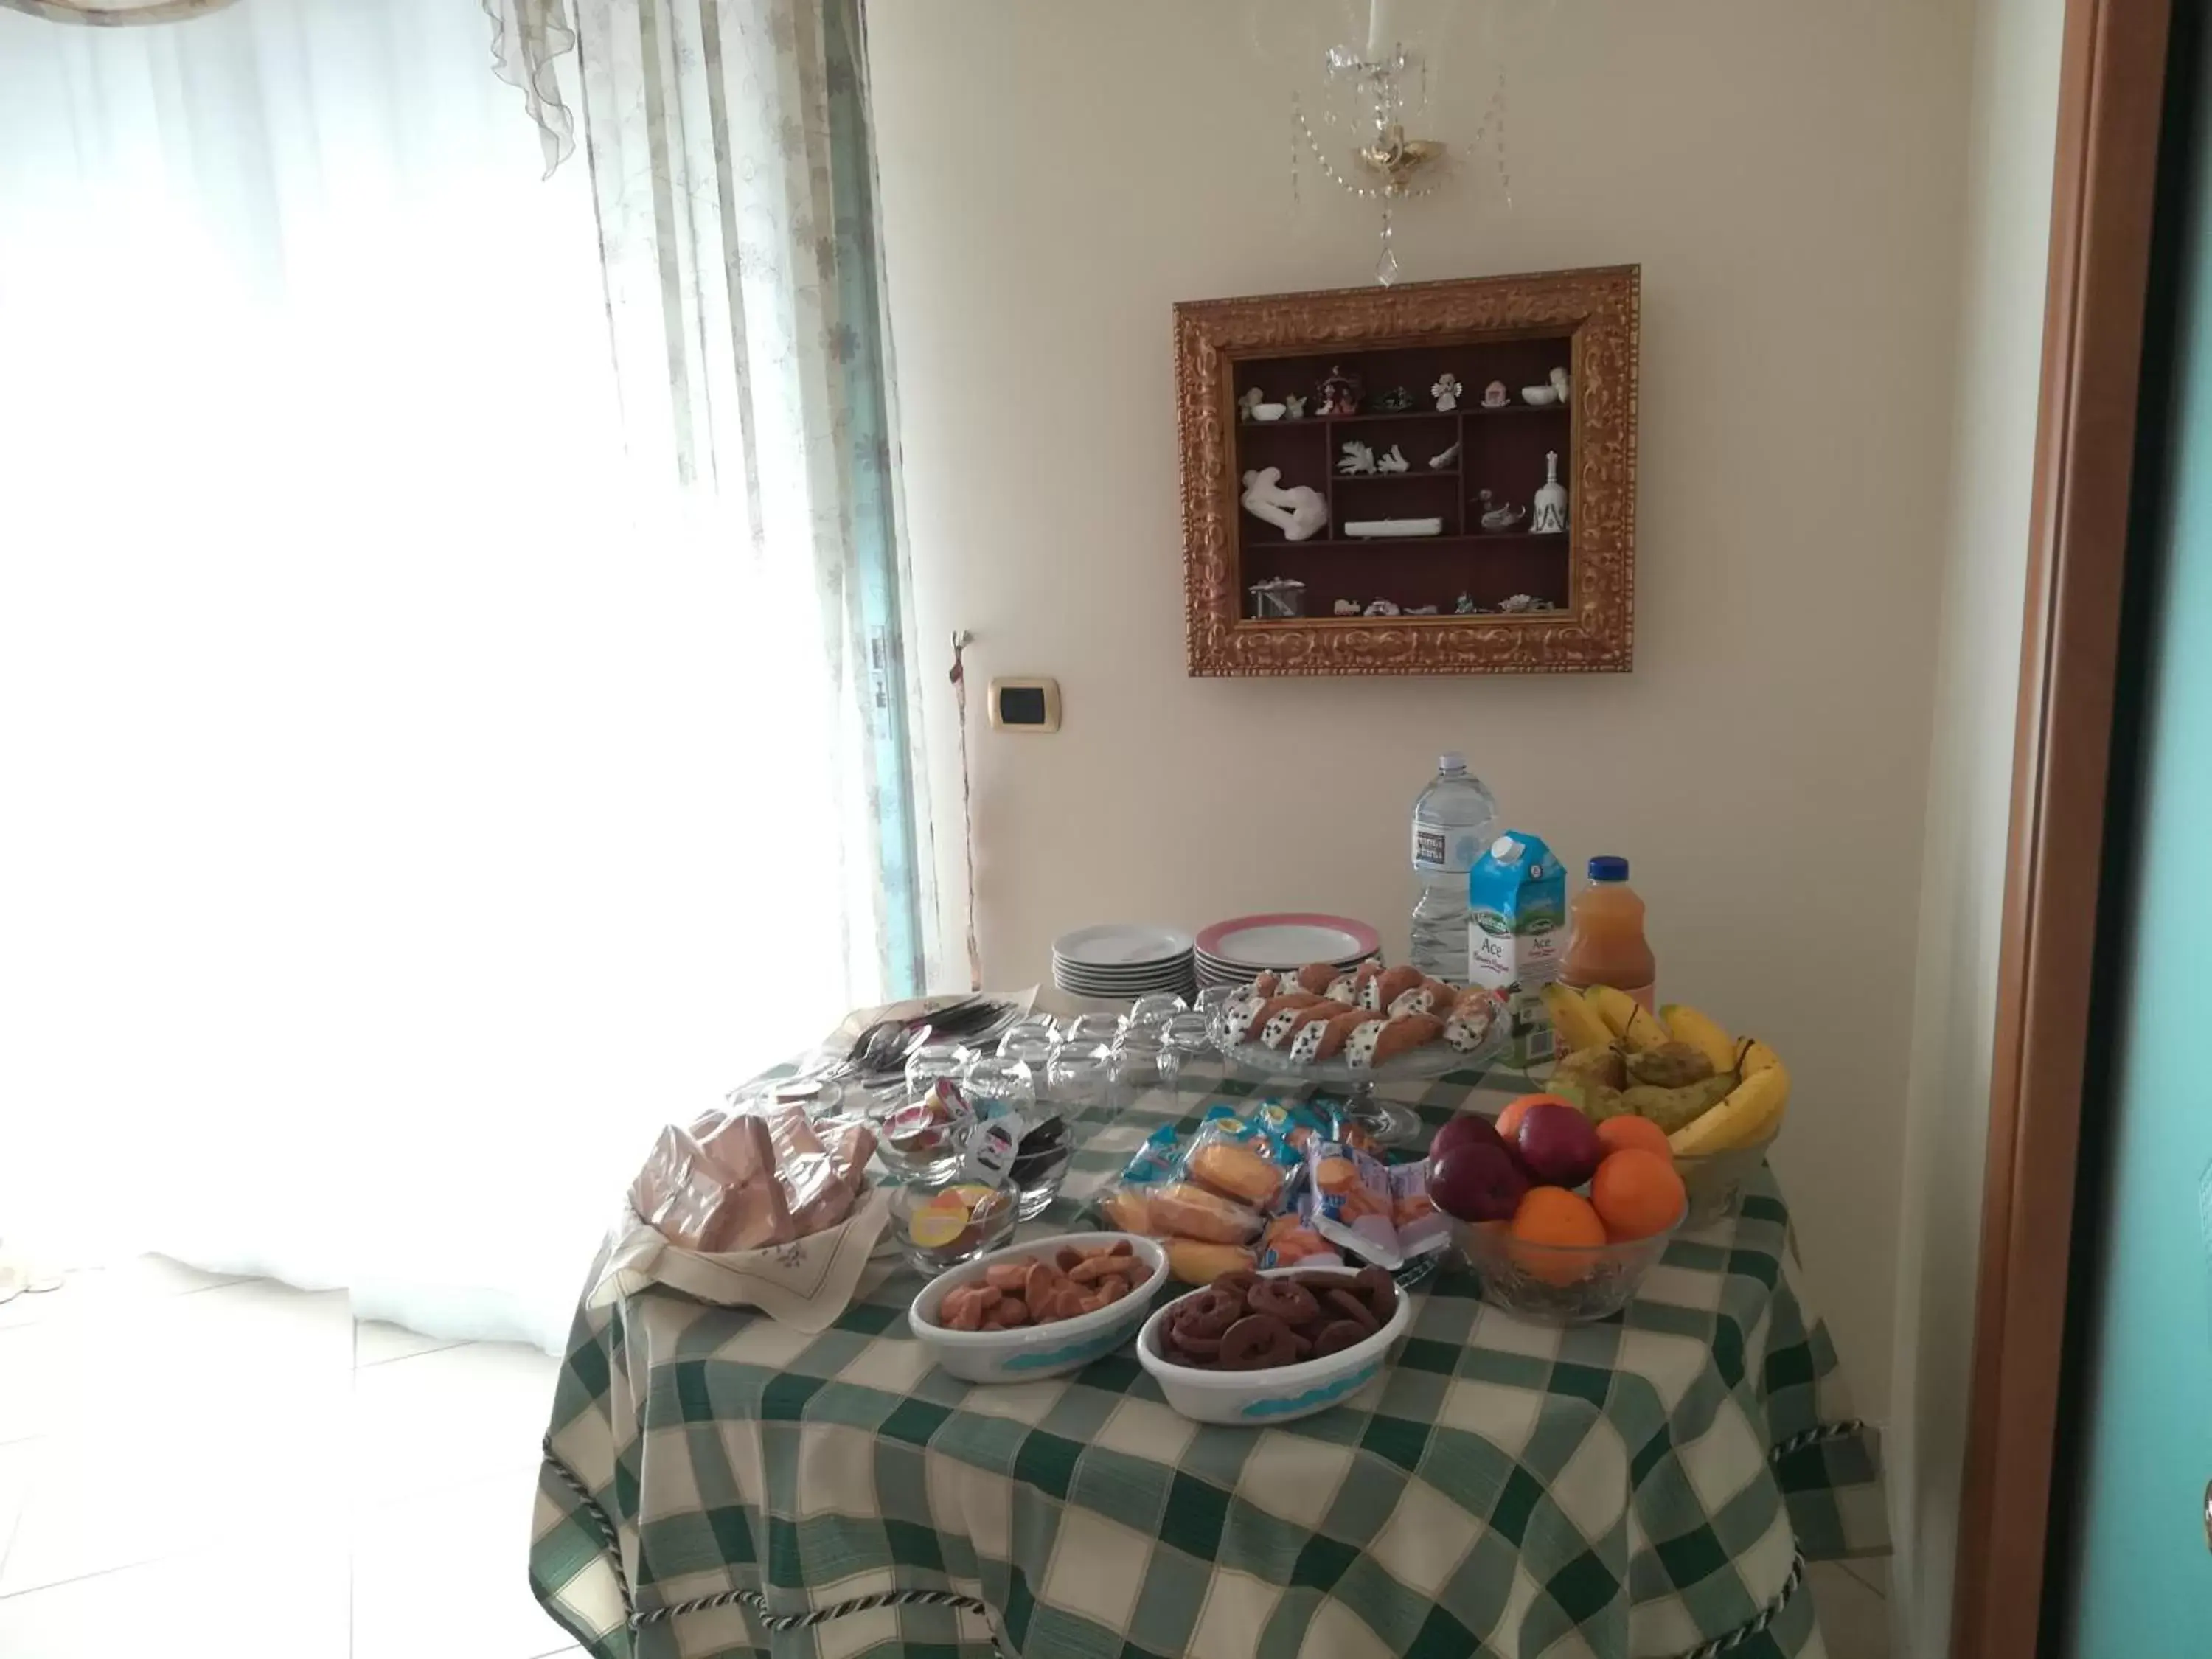 Italian breakfast in La Collina Capo d'Orlando